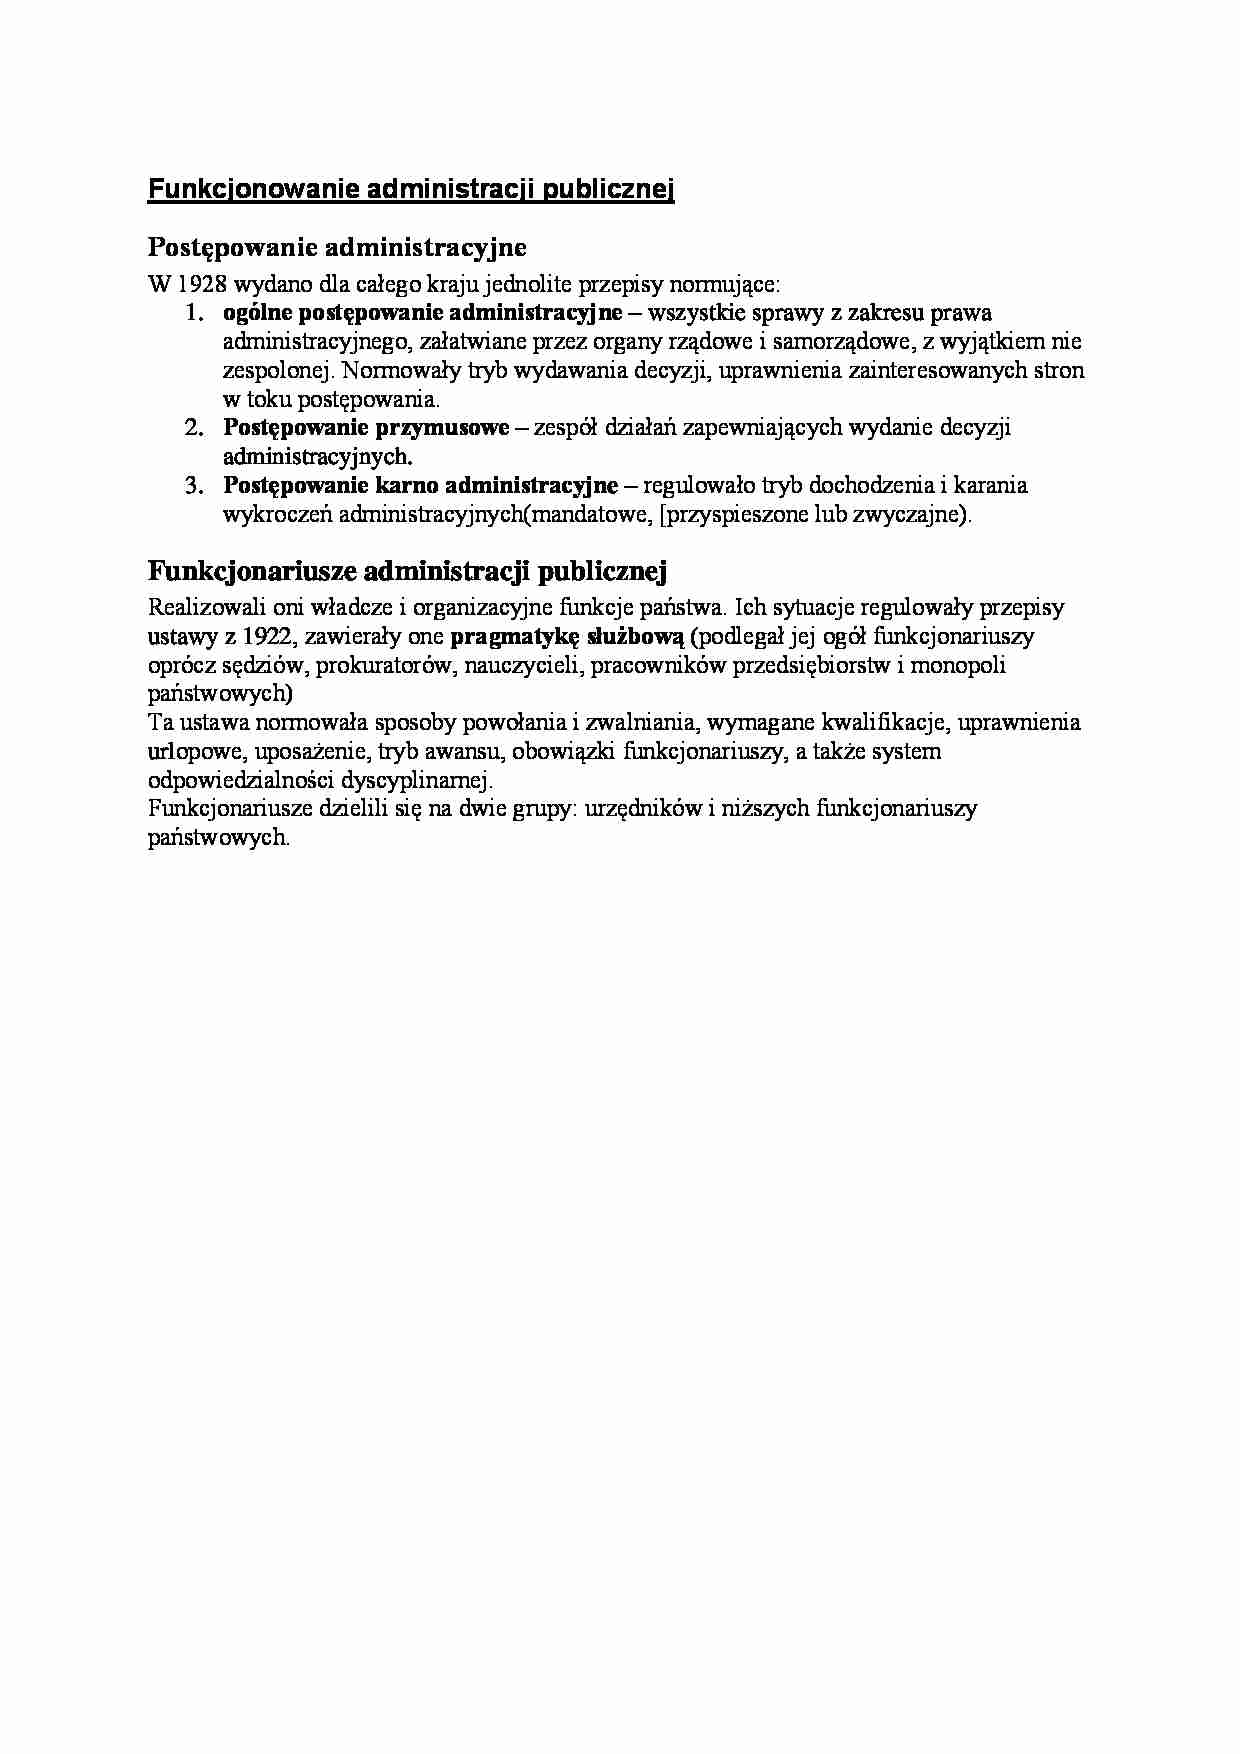 II Rzeczpospolita - Funkcjonowanie administracji publicznej - strona 1